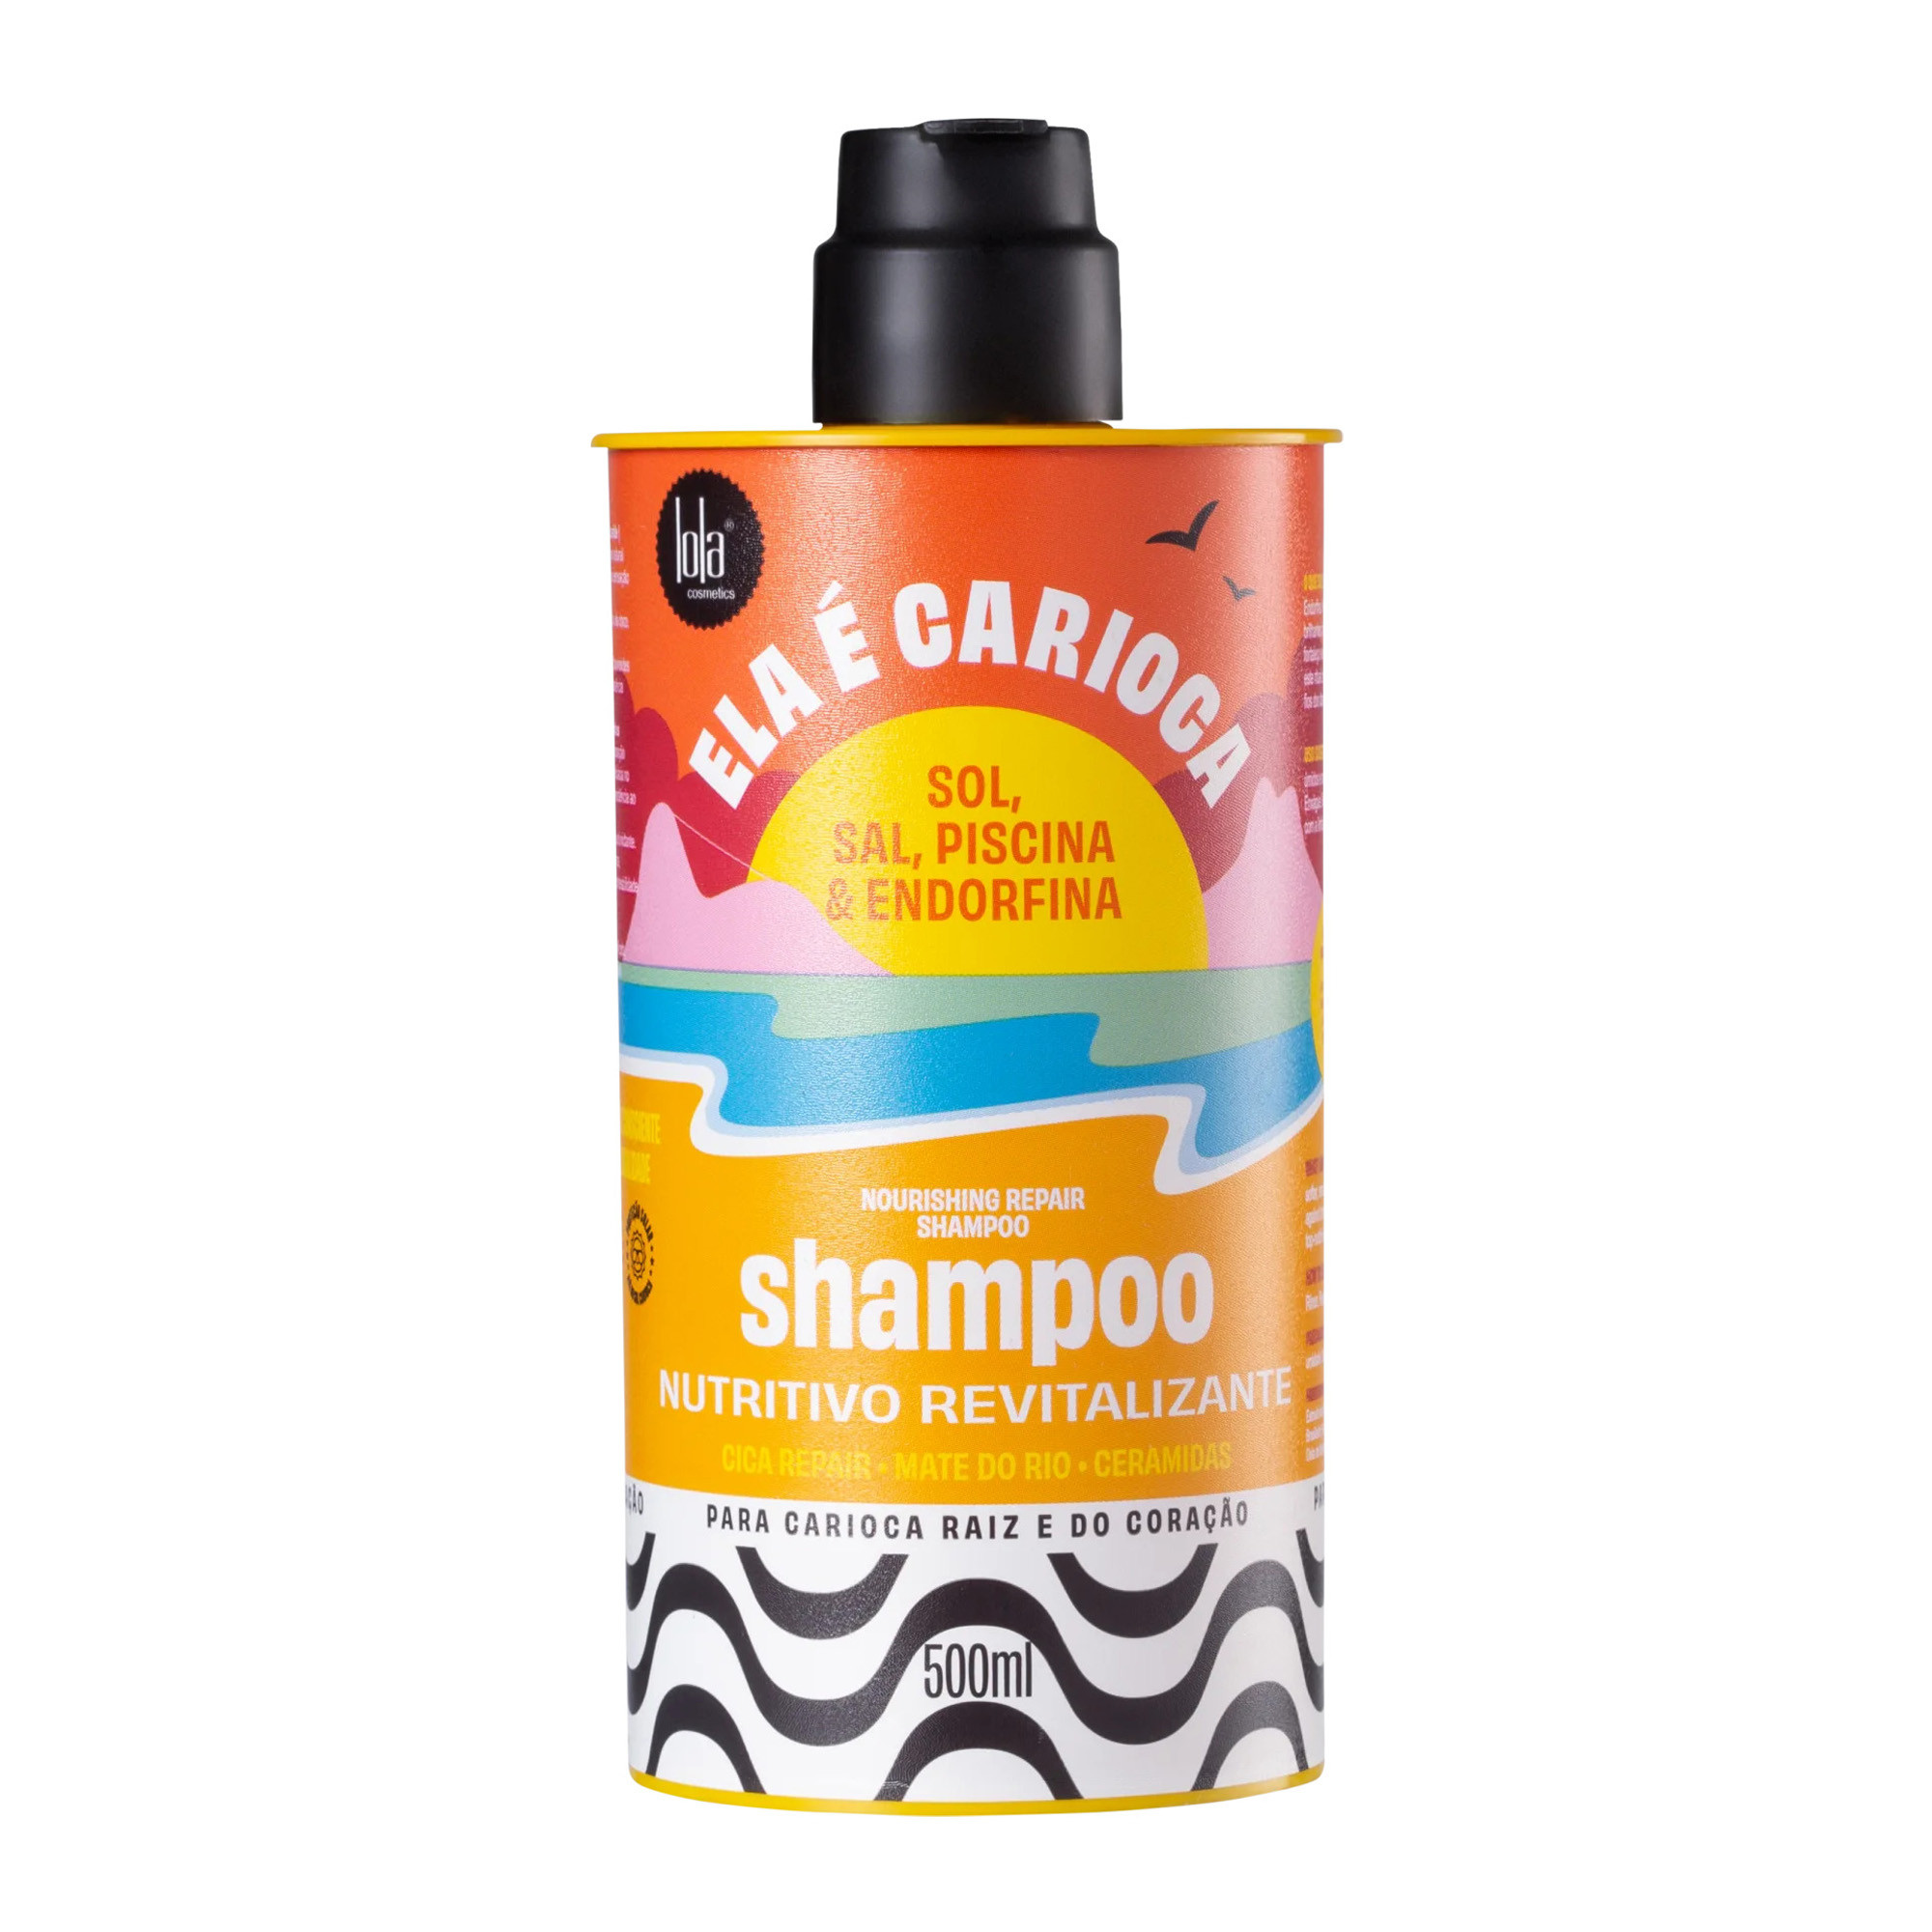 Восстанавливающий питательный шампунь Lola Cosmetics Ela É Carioca Shampoo